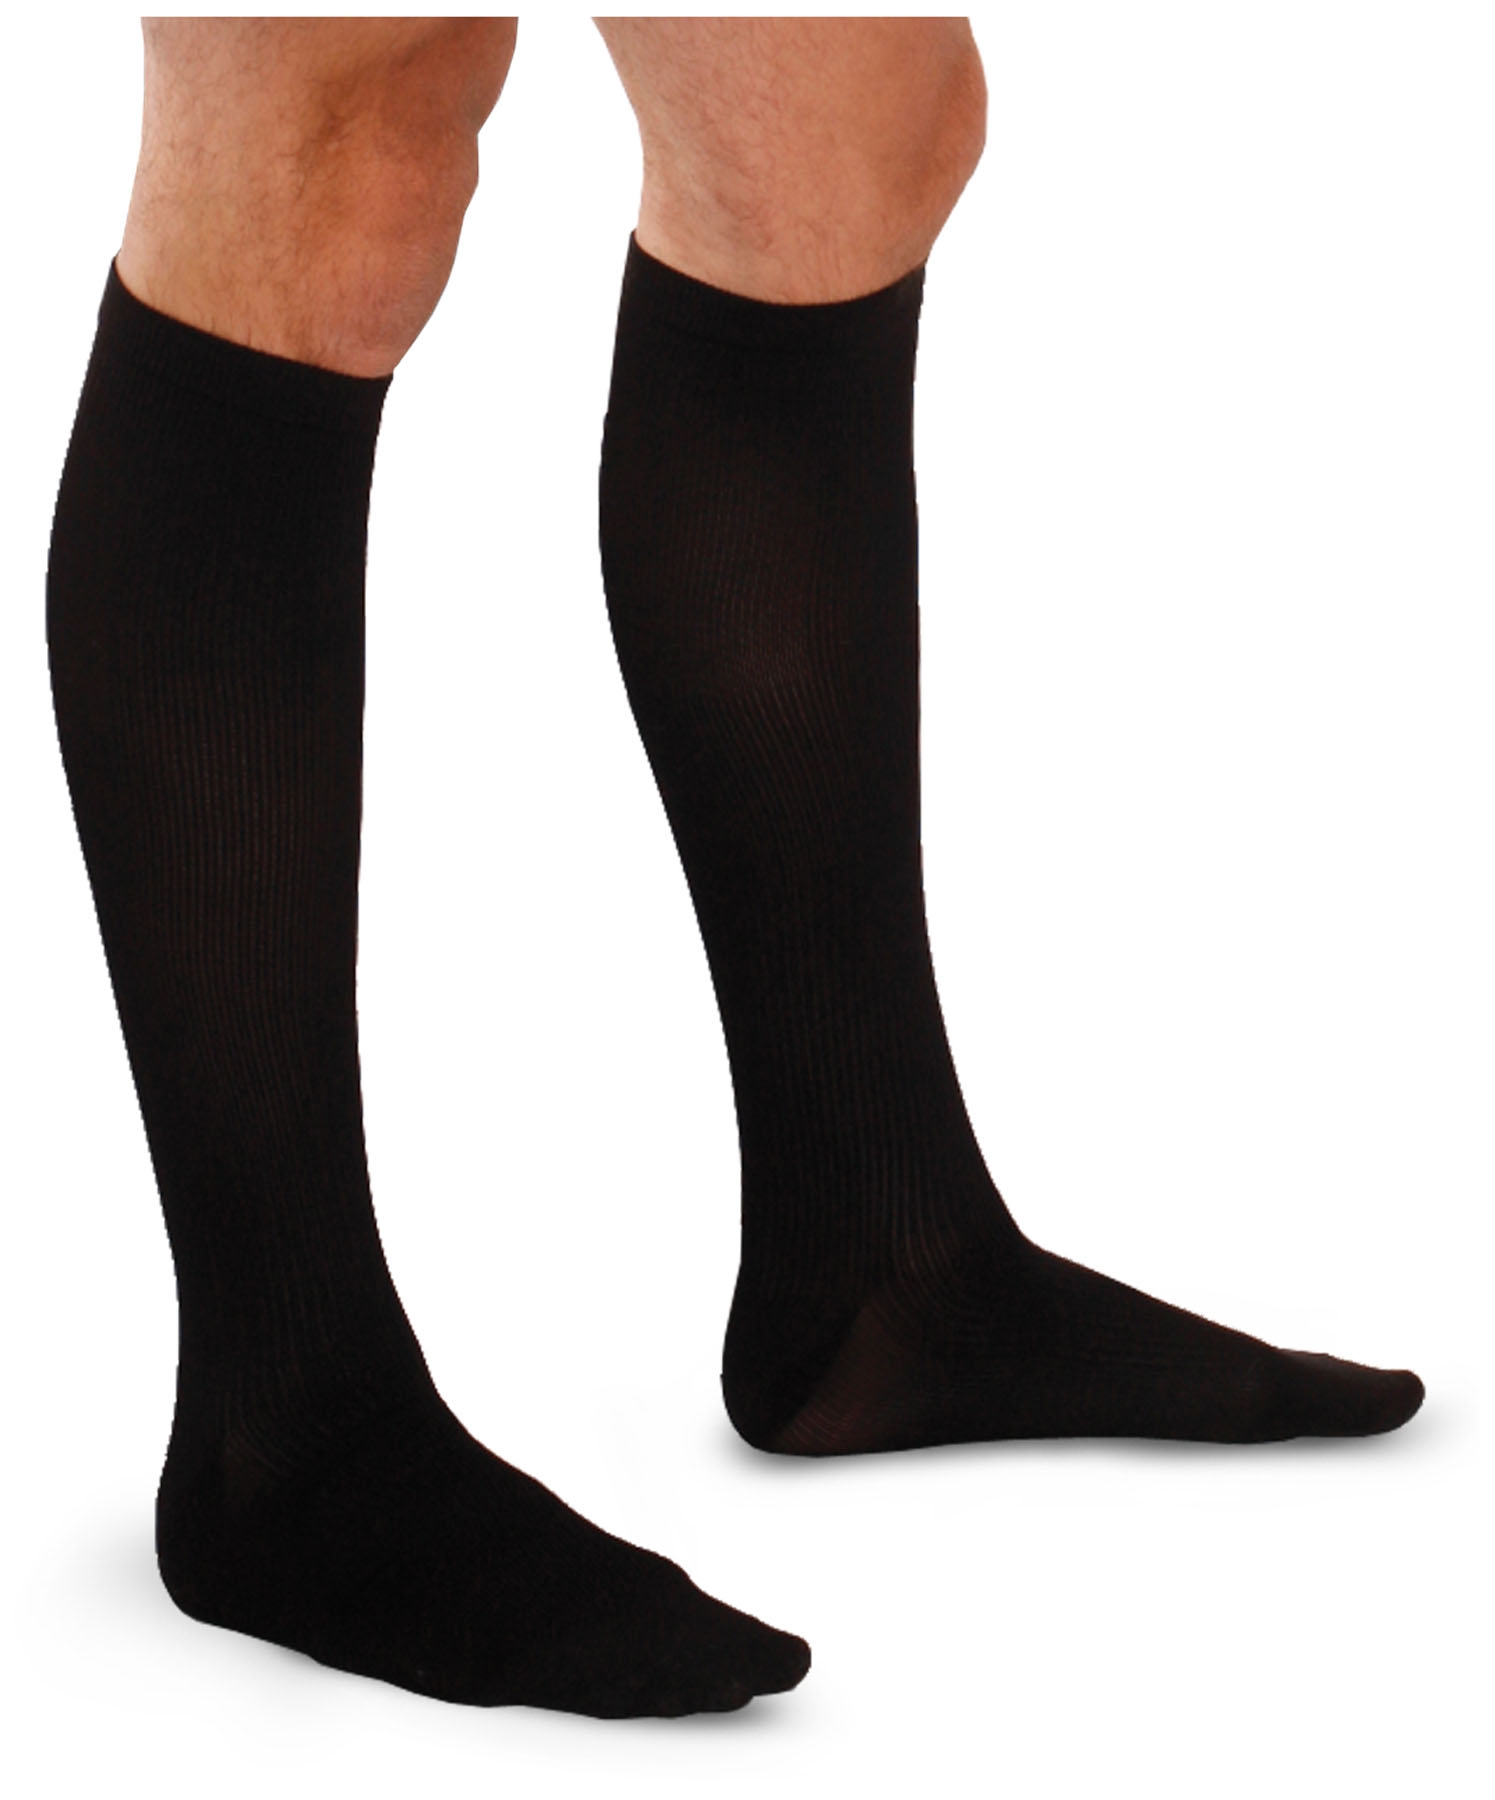 Socks  Hosiery  Order Online  Save  Giant